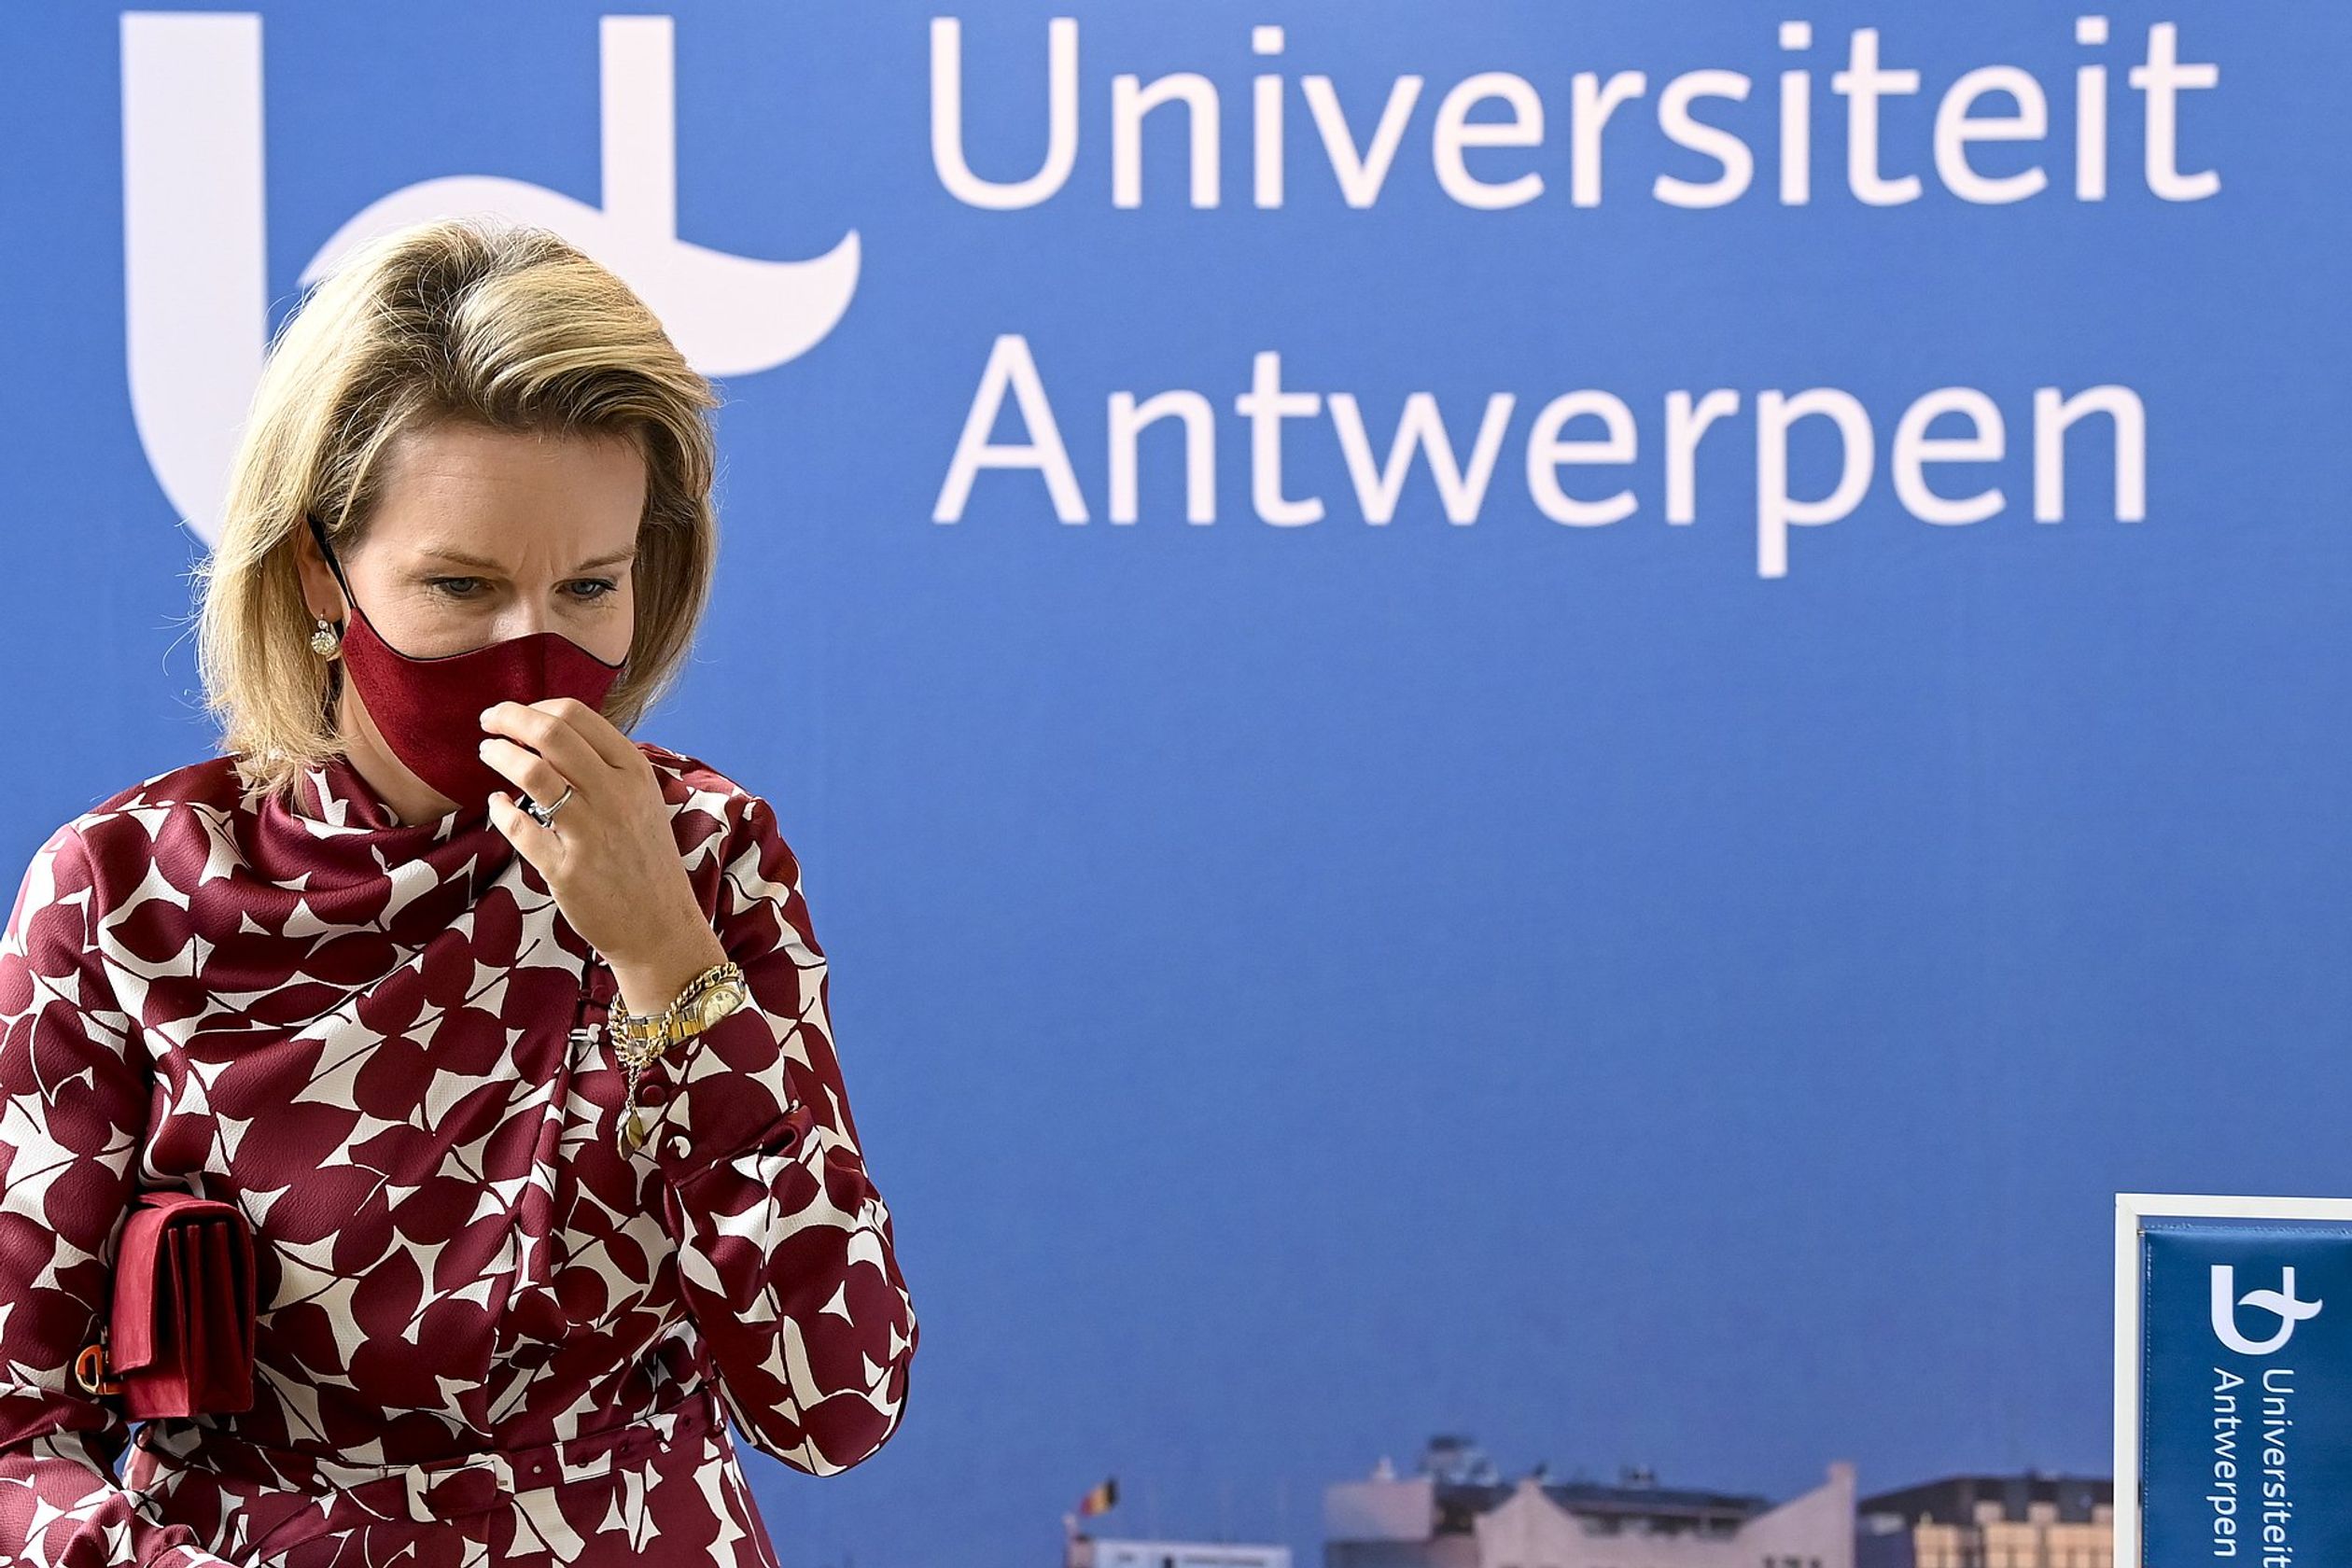 Mathilde bezoekt het Centrum voor de Evaluatie van Vaccins van de Universiteit Antwerpen, waar